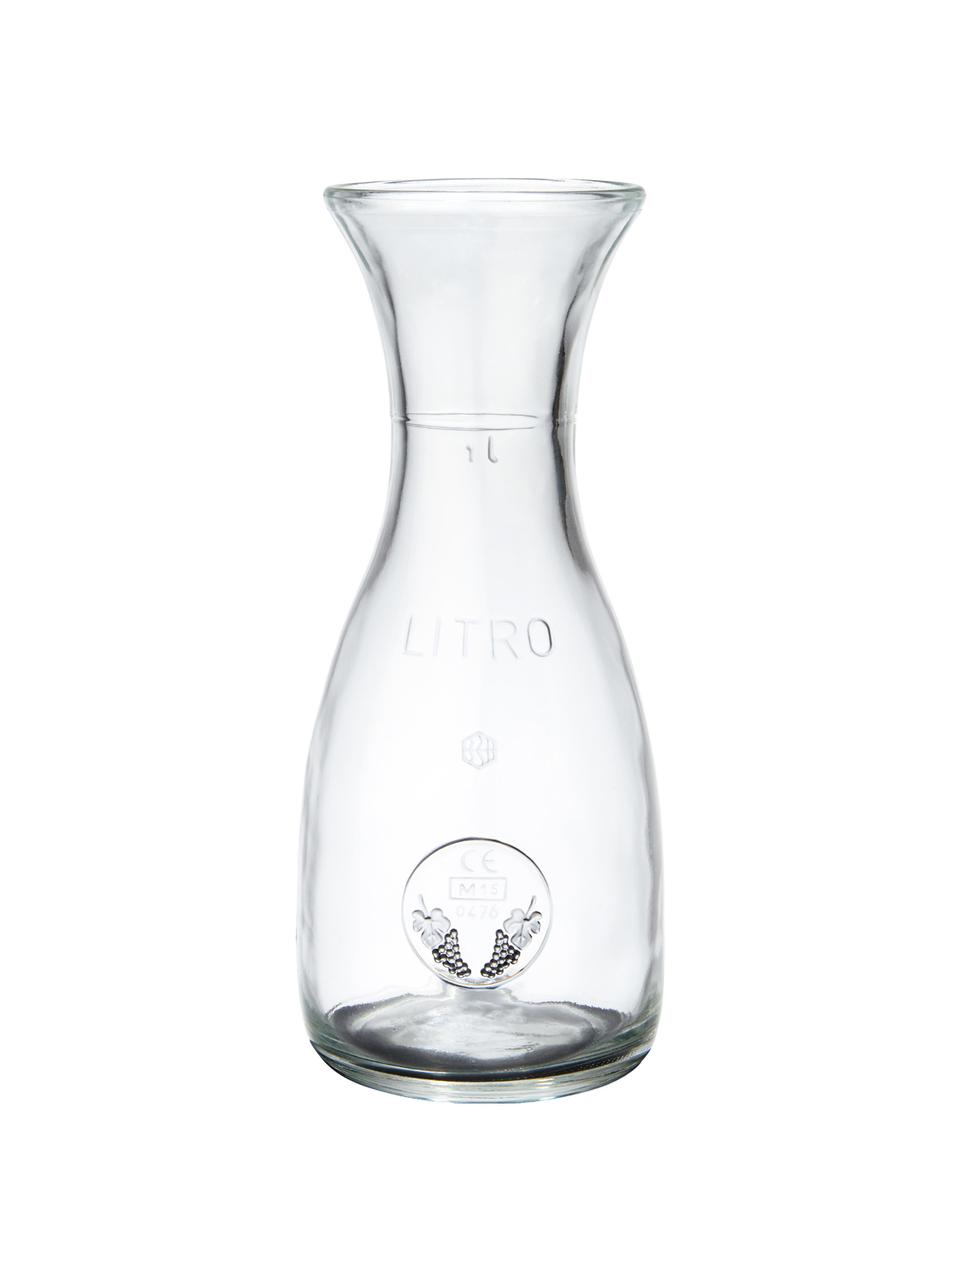 Glaskaraffe Vino mit Liter- und Weintraubenprägung, 1 L, Glas, Transparent, H 26 cm, 1 L